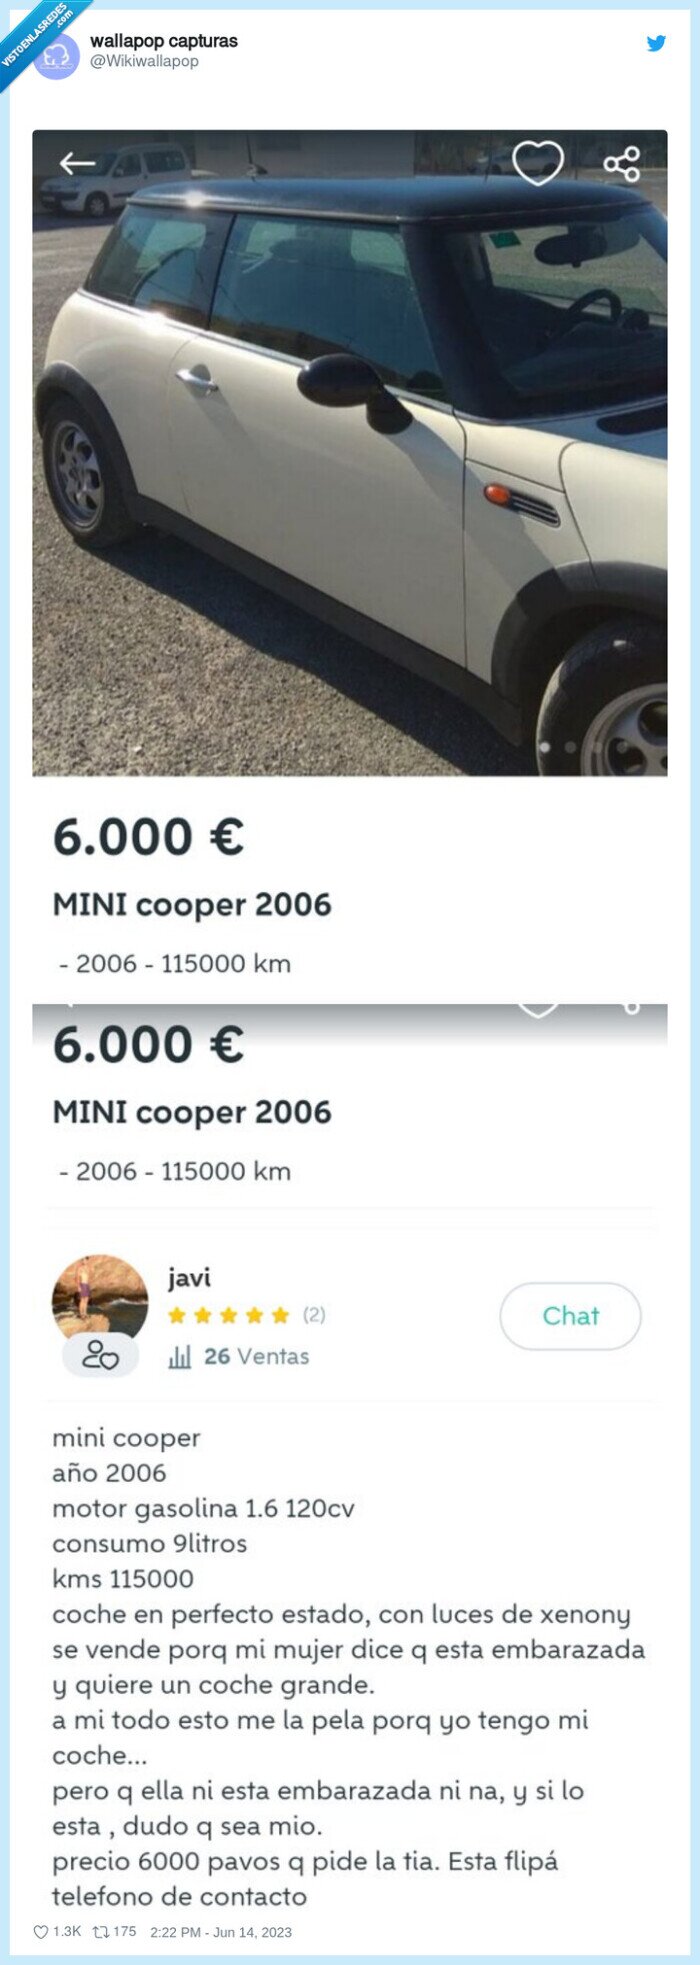 minicooper,wallapop,venta,coche